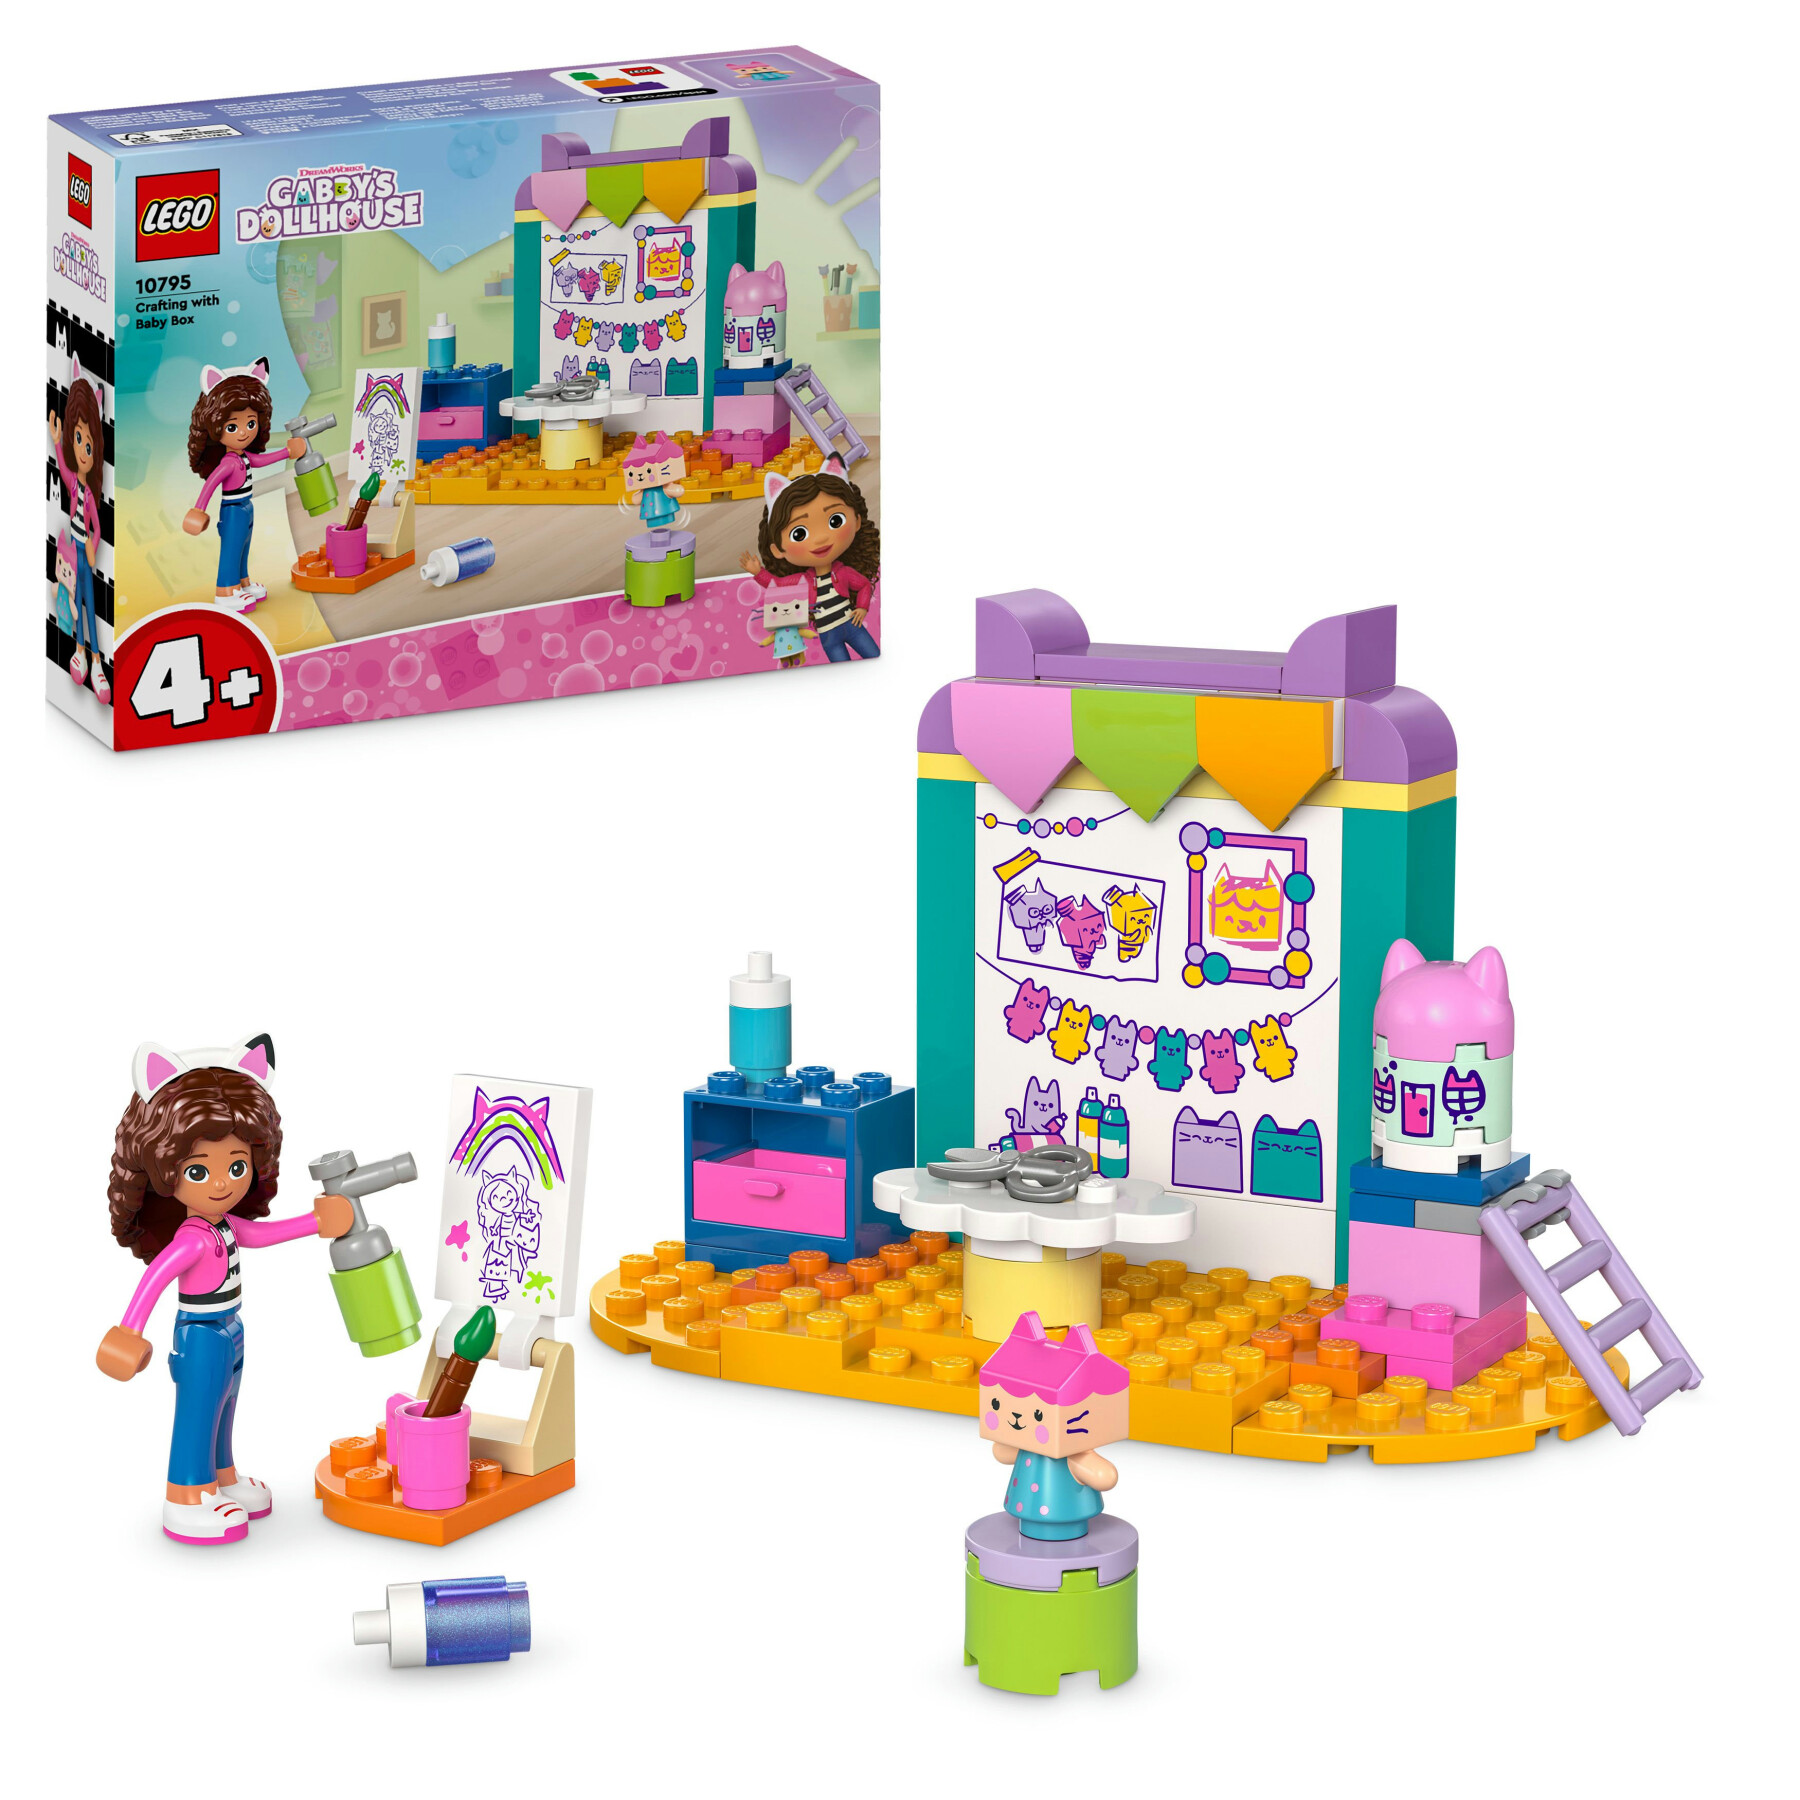 Lego la casa delle bambole di gabby 10795 creazioni con baby scatola, giochi educativi per bambini 4+, idea regalo creativa - GABBY'S DOLLHOUSE